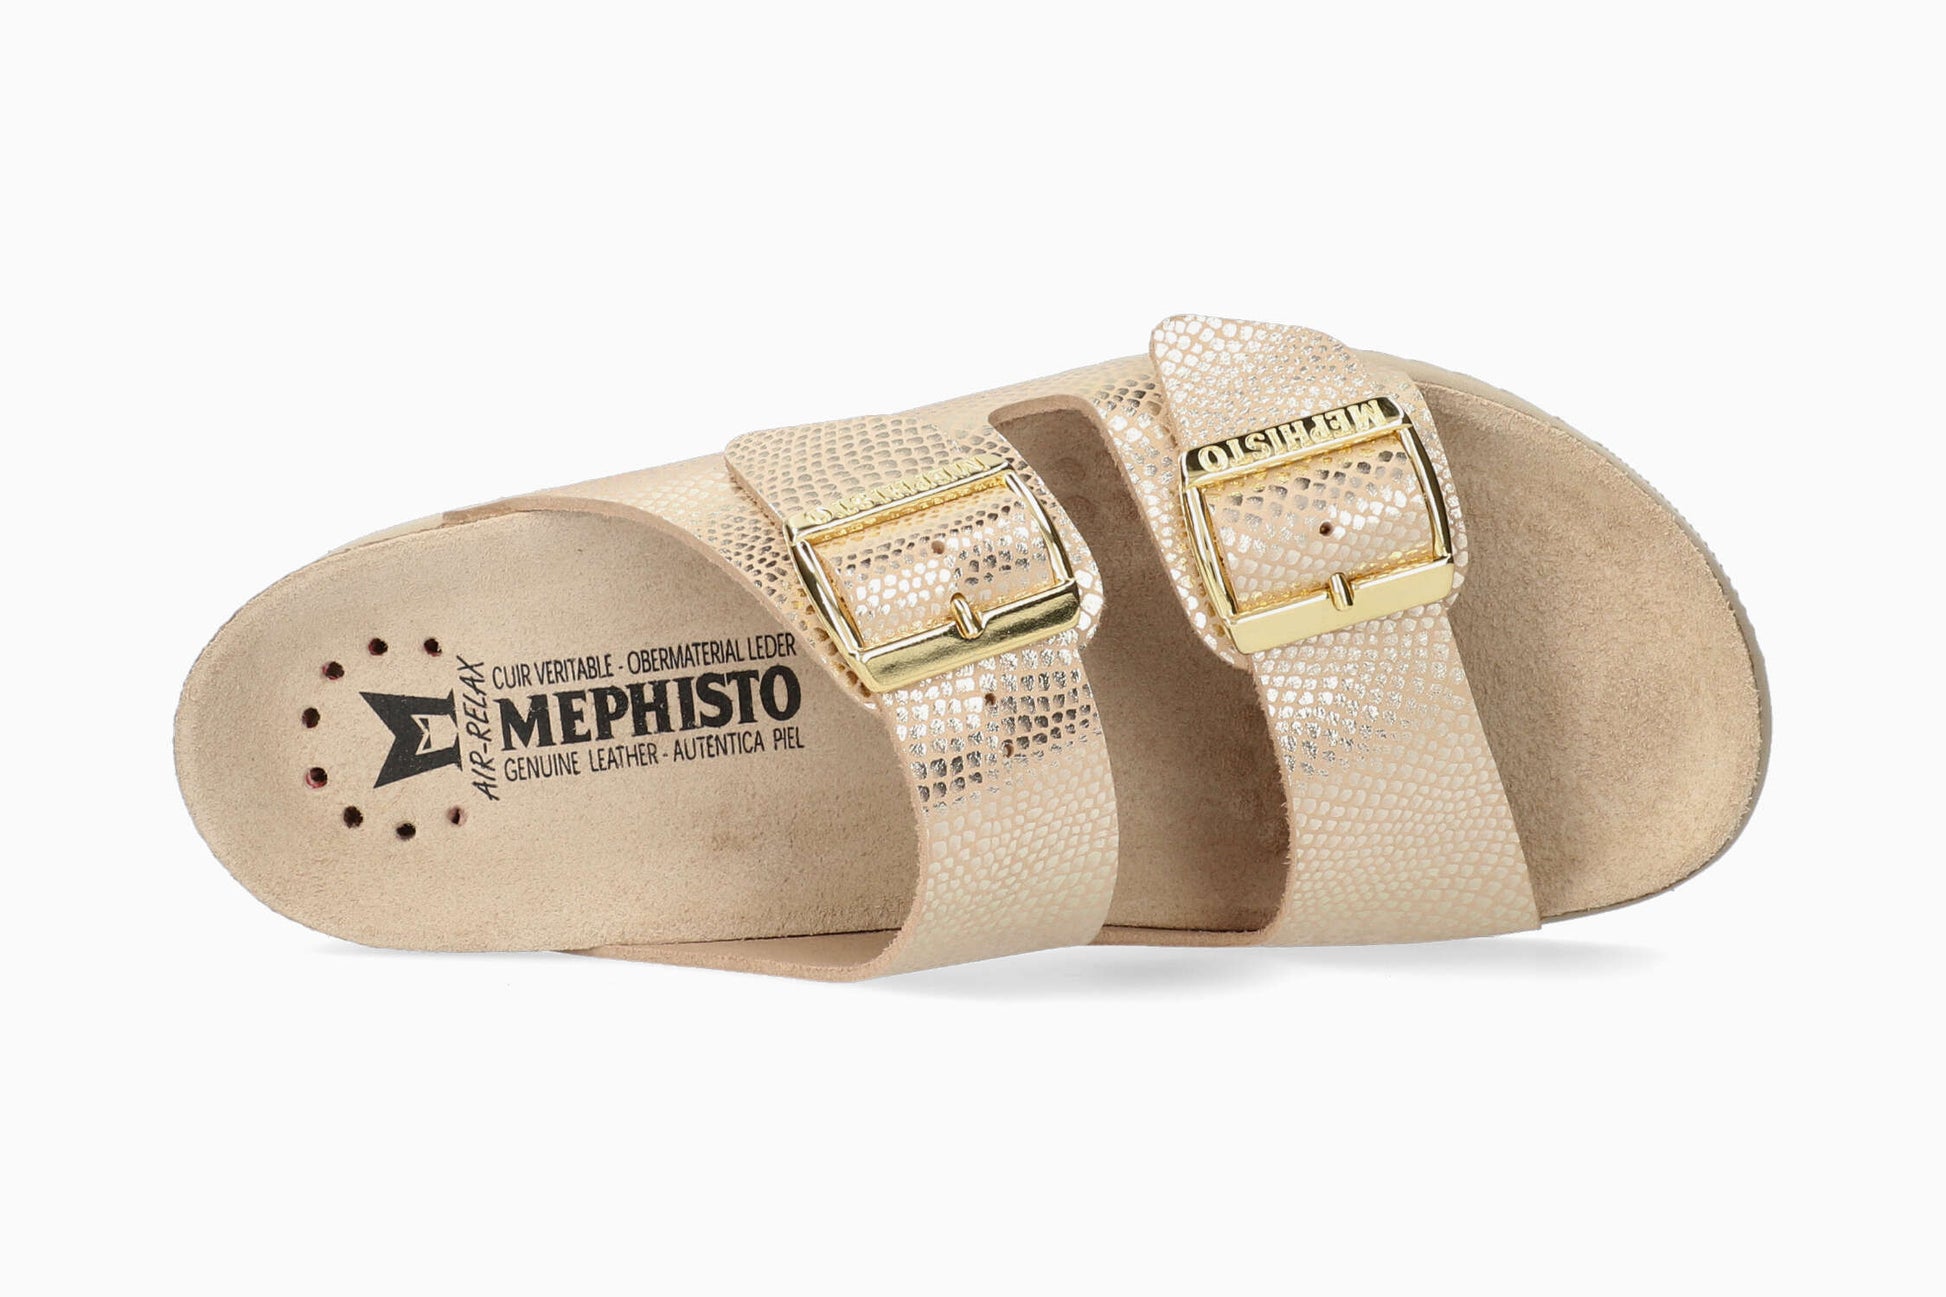 Hester Mephisto Women's Sandals Light Sand Top